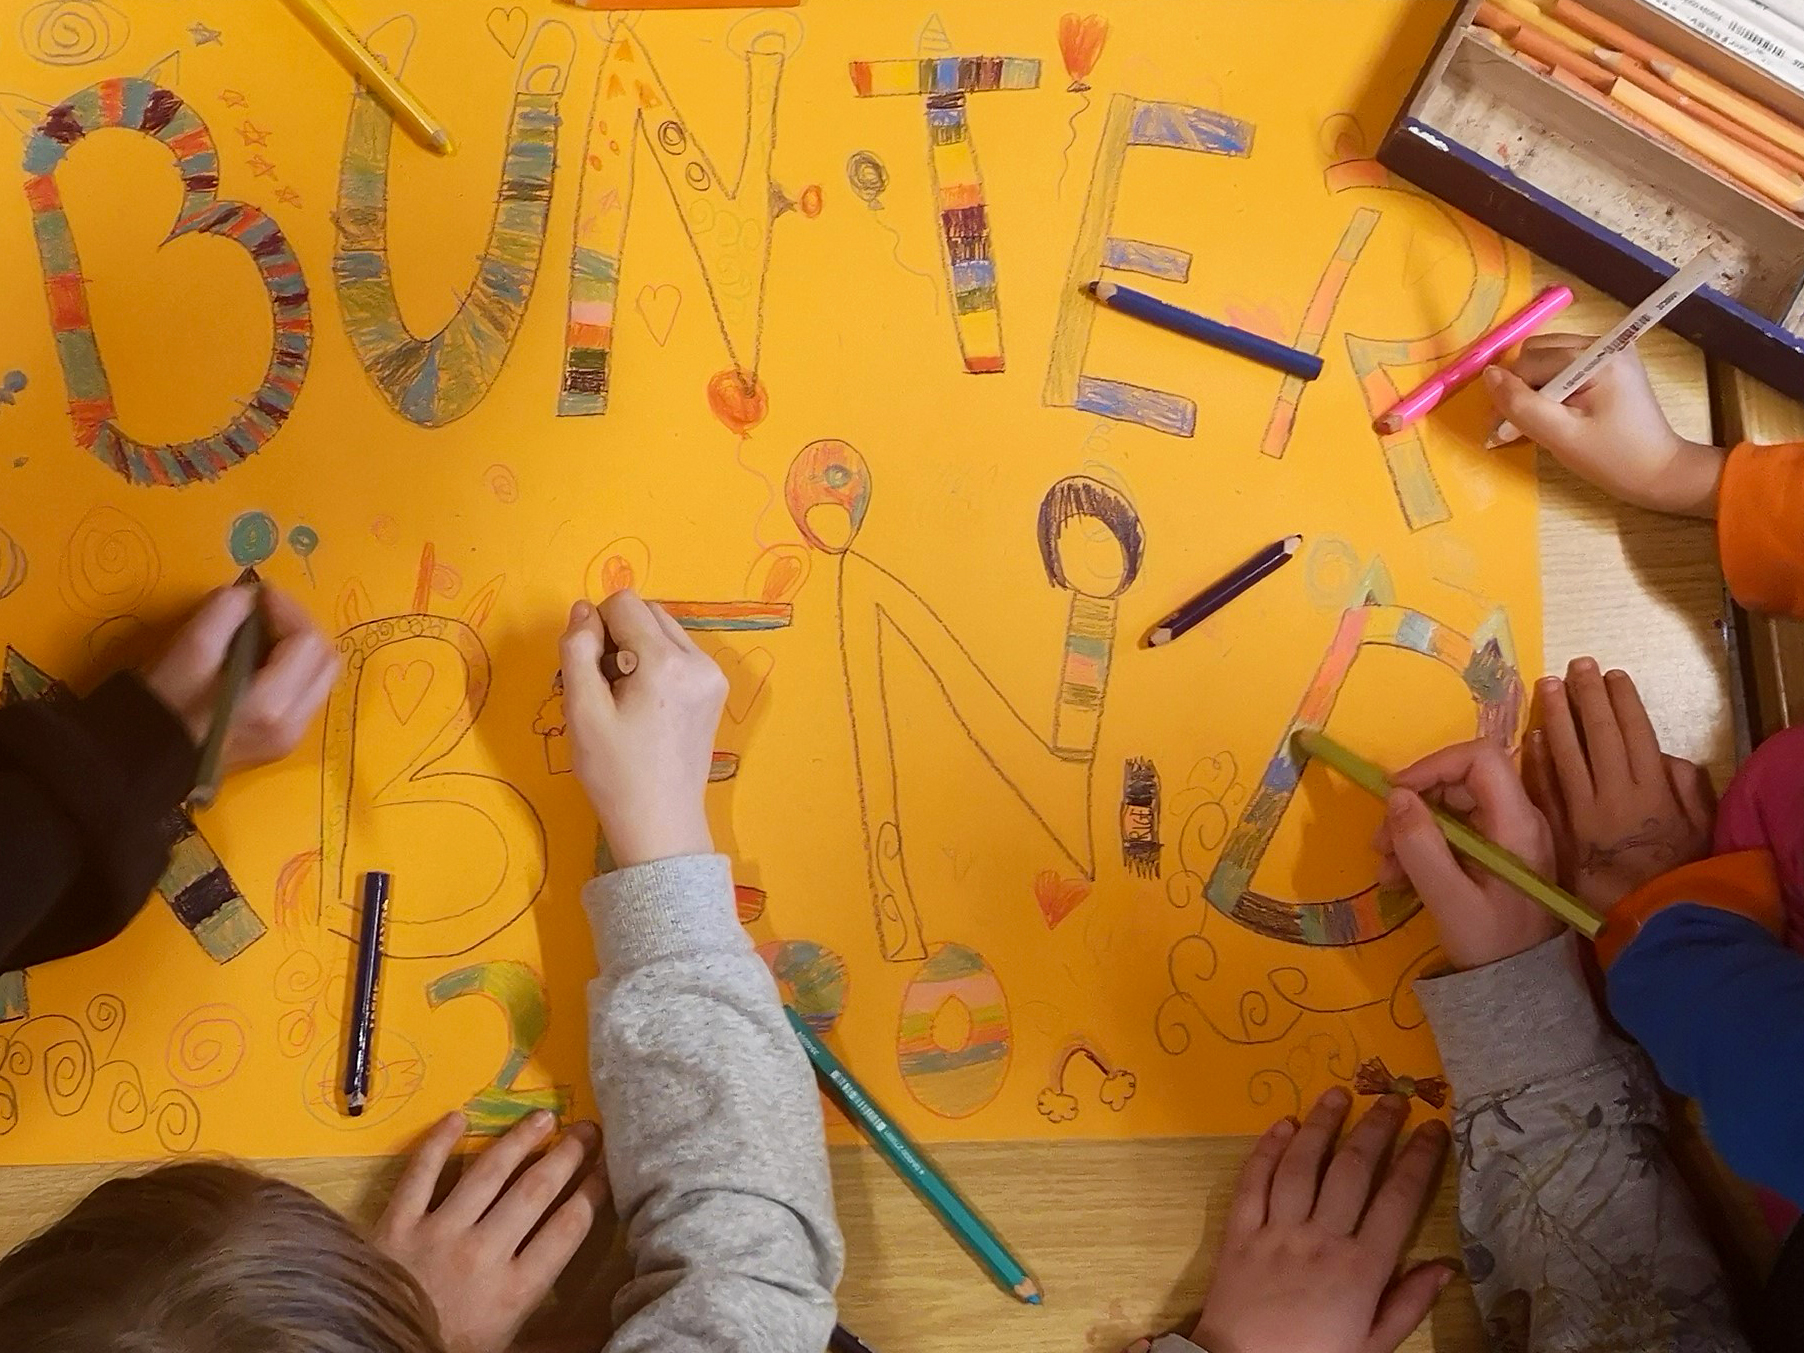 Kinder gestalten gemeinsam ein buntes Plakat. Man sieht viele Hände mit Buntstiften.